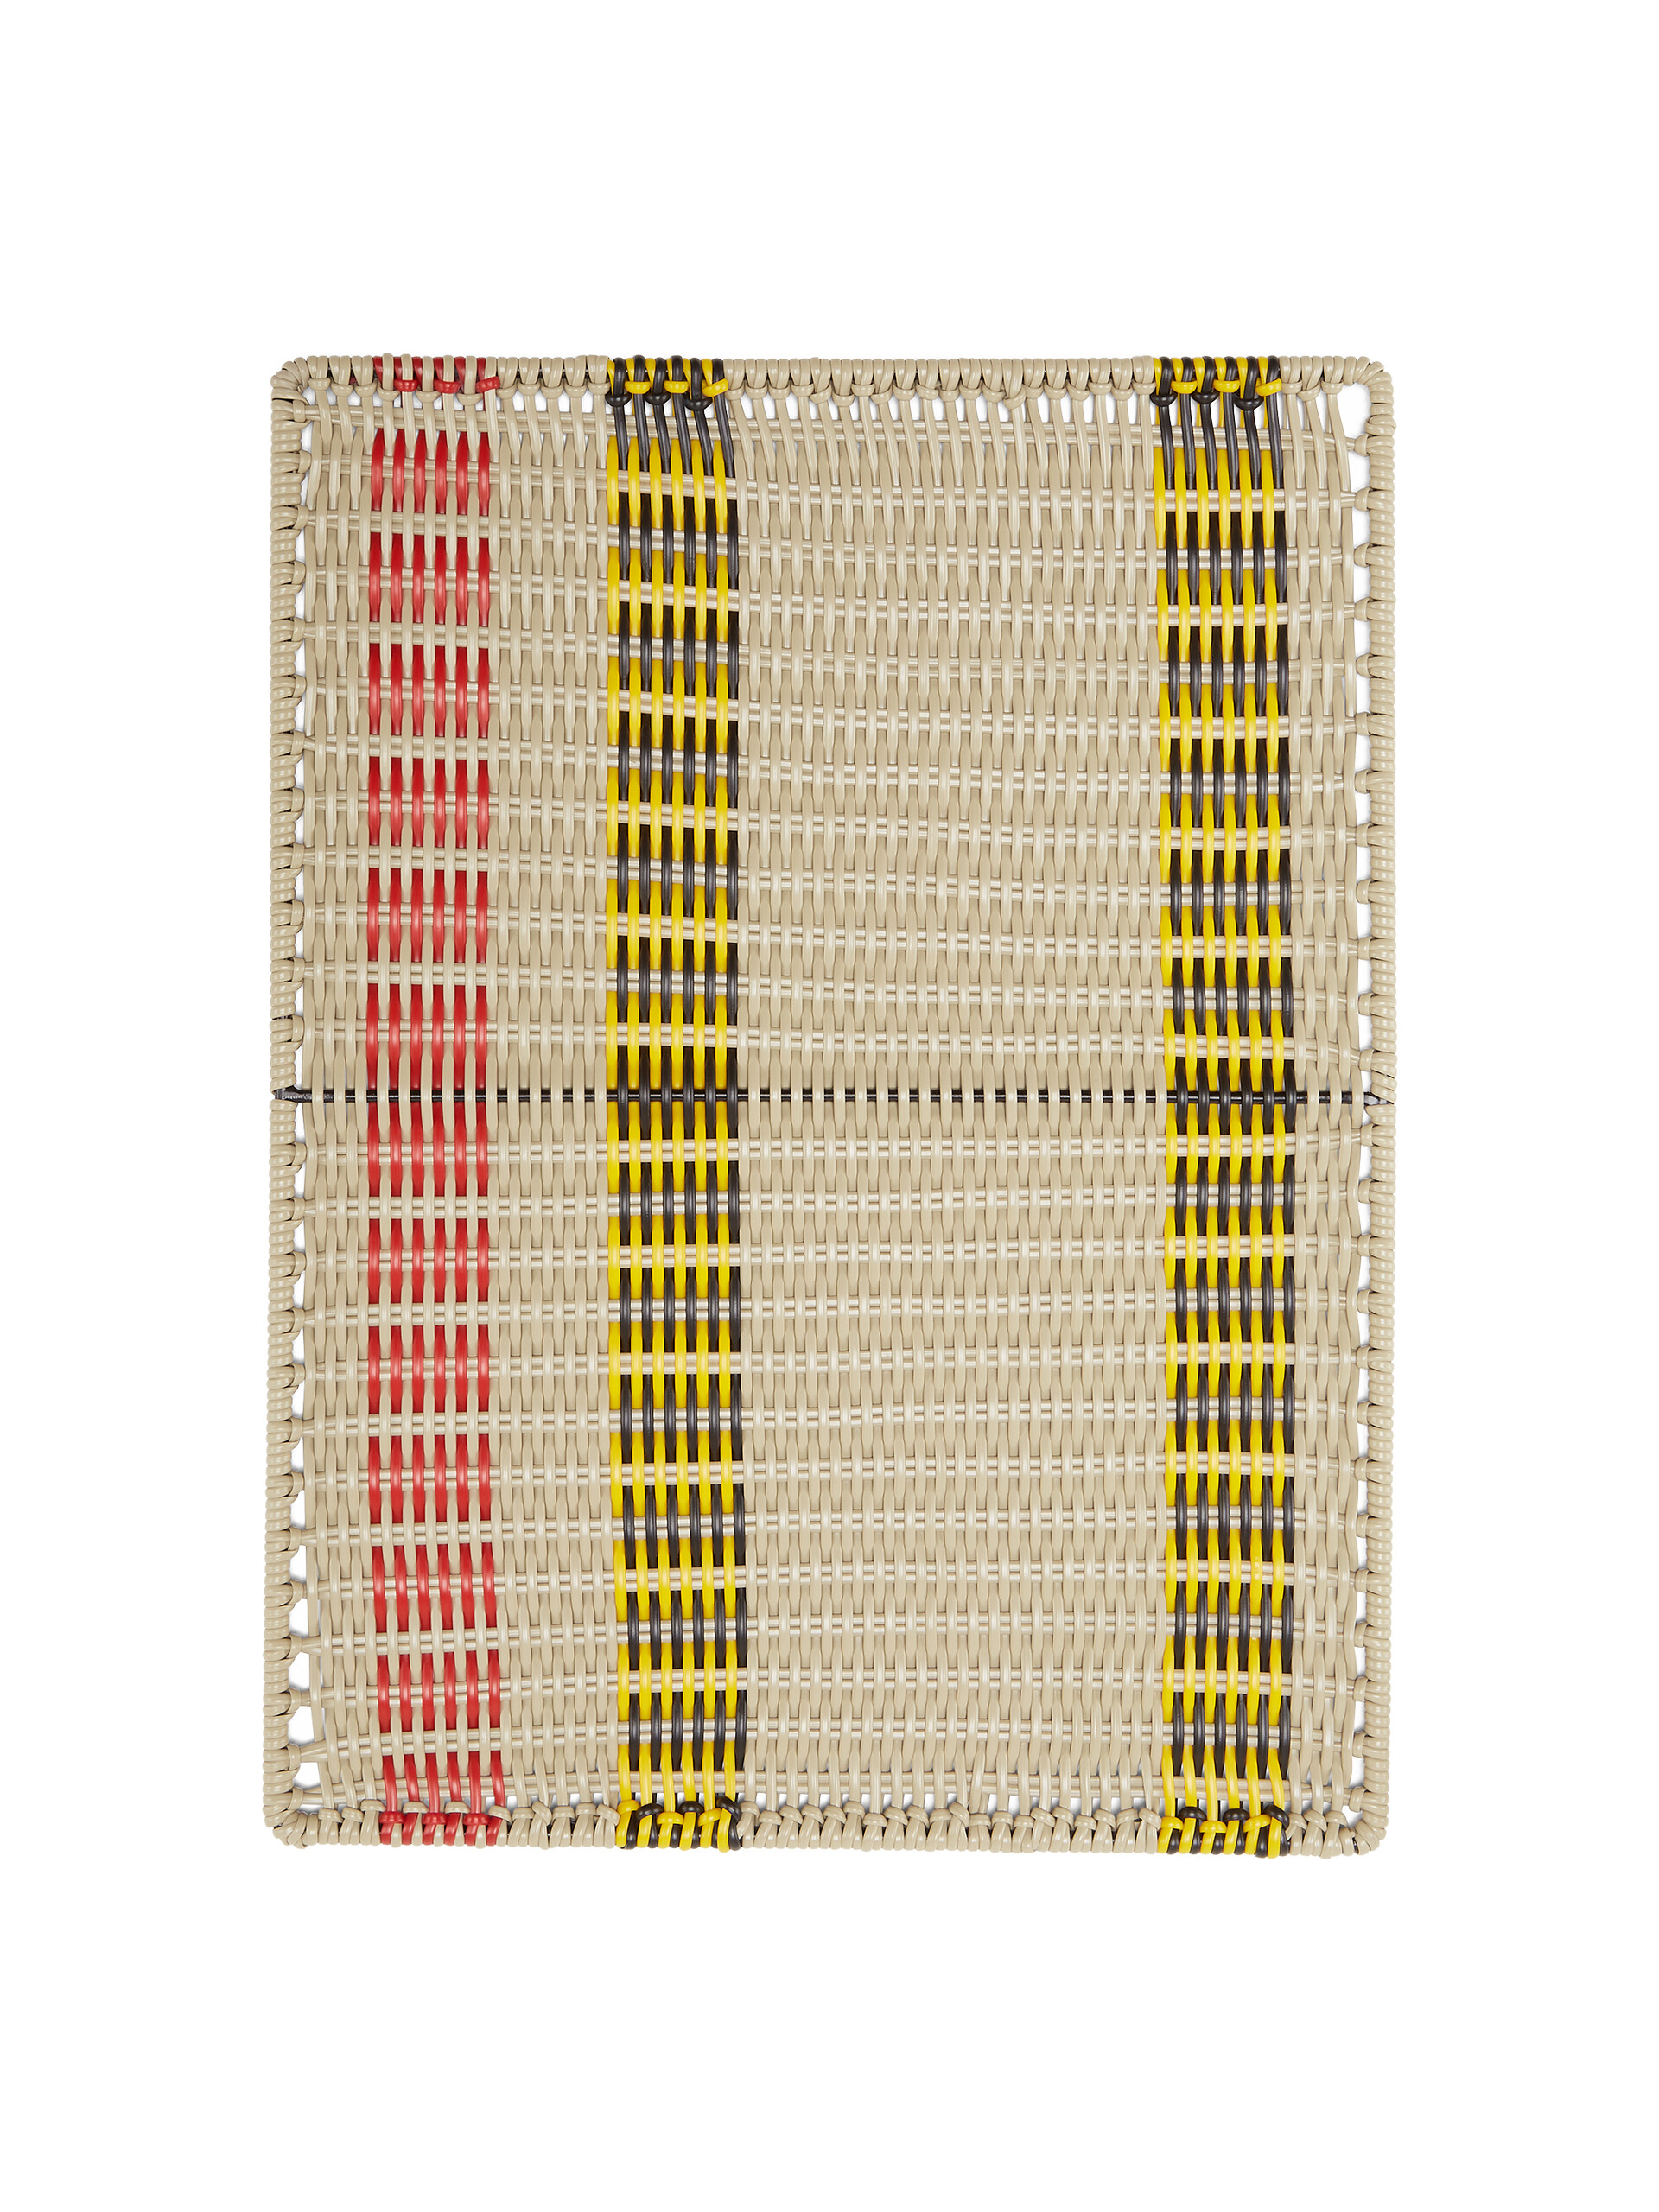 MARNI MARKET rechteckiges Tischset mit Streifenmotiv aus Eisen und gelbem, schwarzem, rotem und beigem gewebten PVC - Home Accessories - Image 2